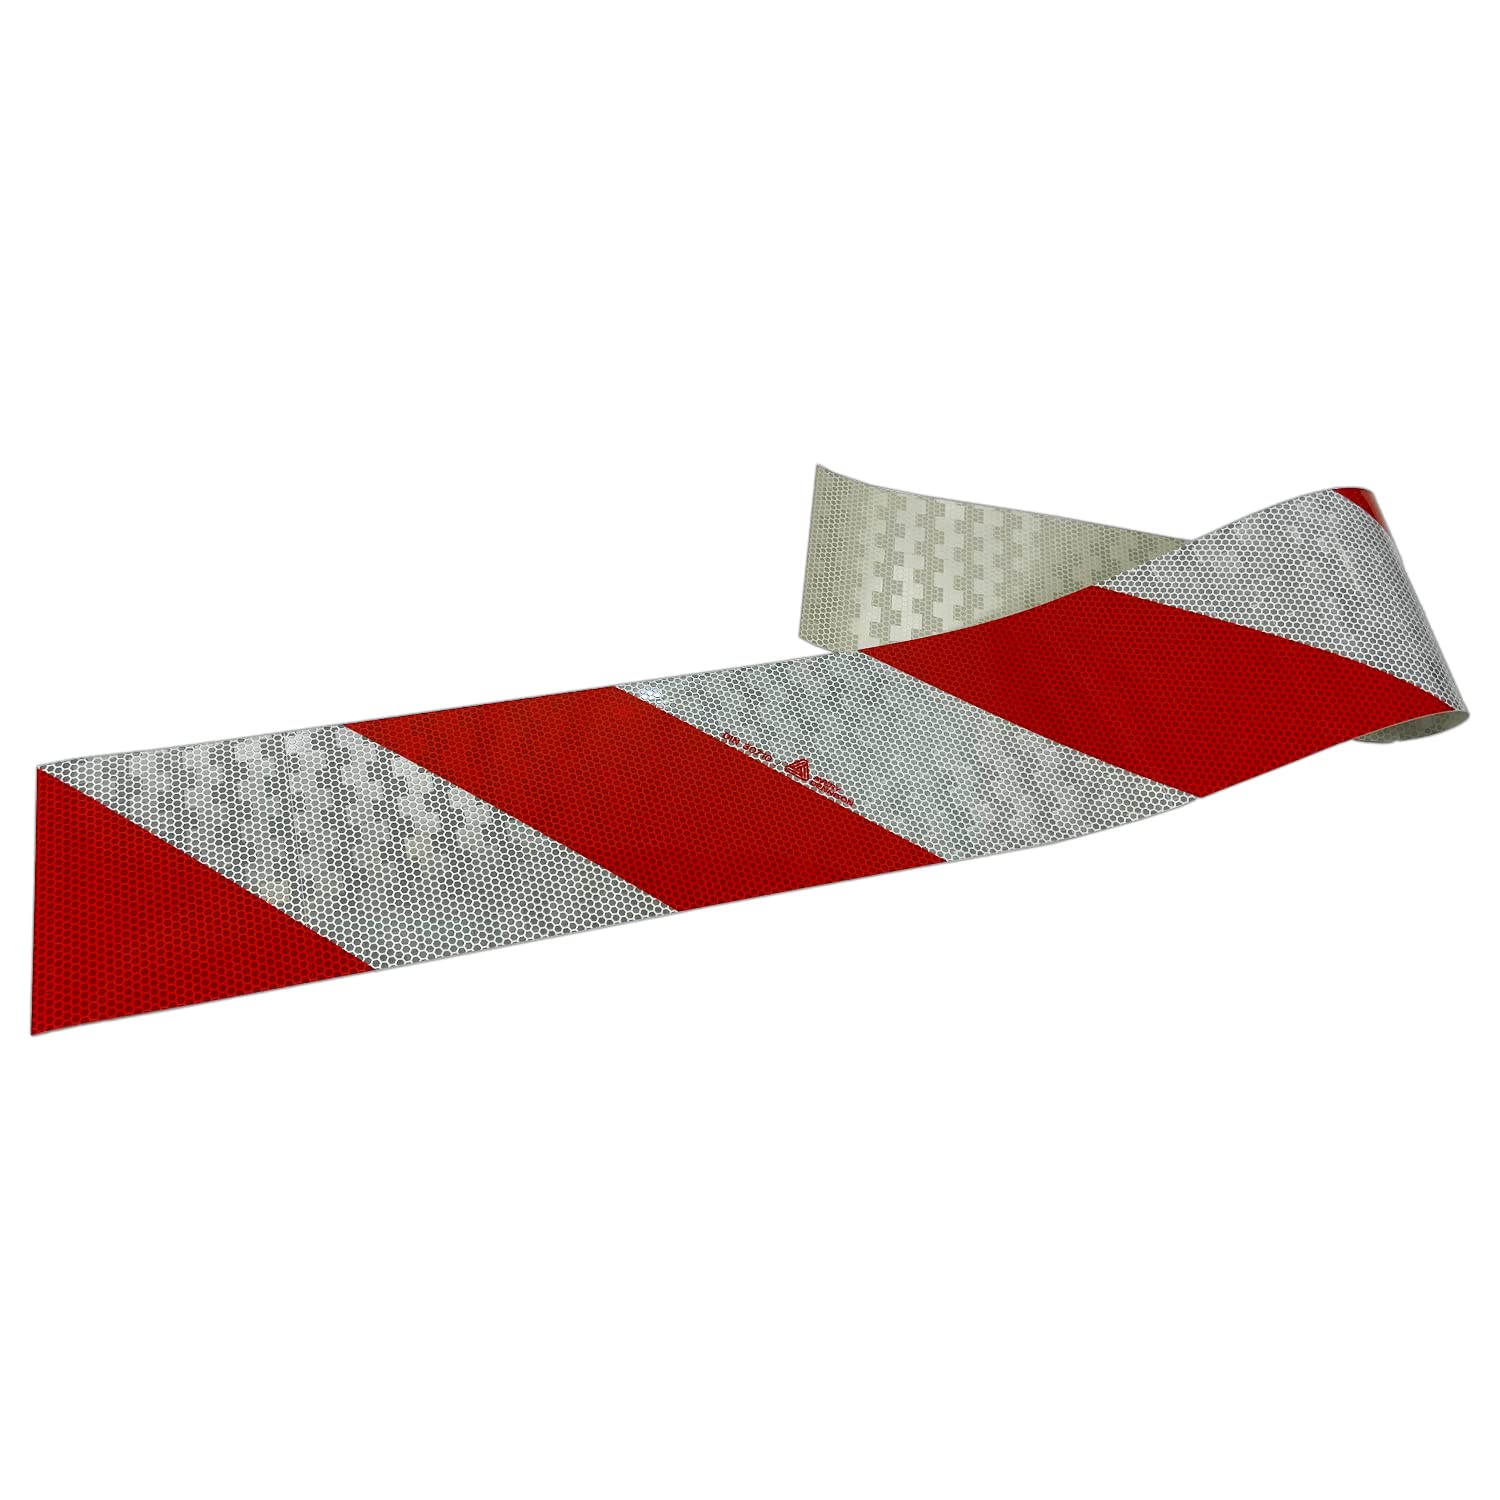 UvV Kfz-Warnmarkierung, Weiss/rot, 141 mm breit, 1 Meter, DIN30710 StVO Sonderrechten (Baustellenfahrzeuge) (Rechtsweisend)